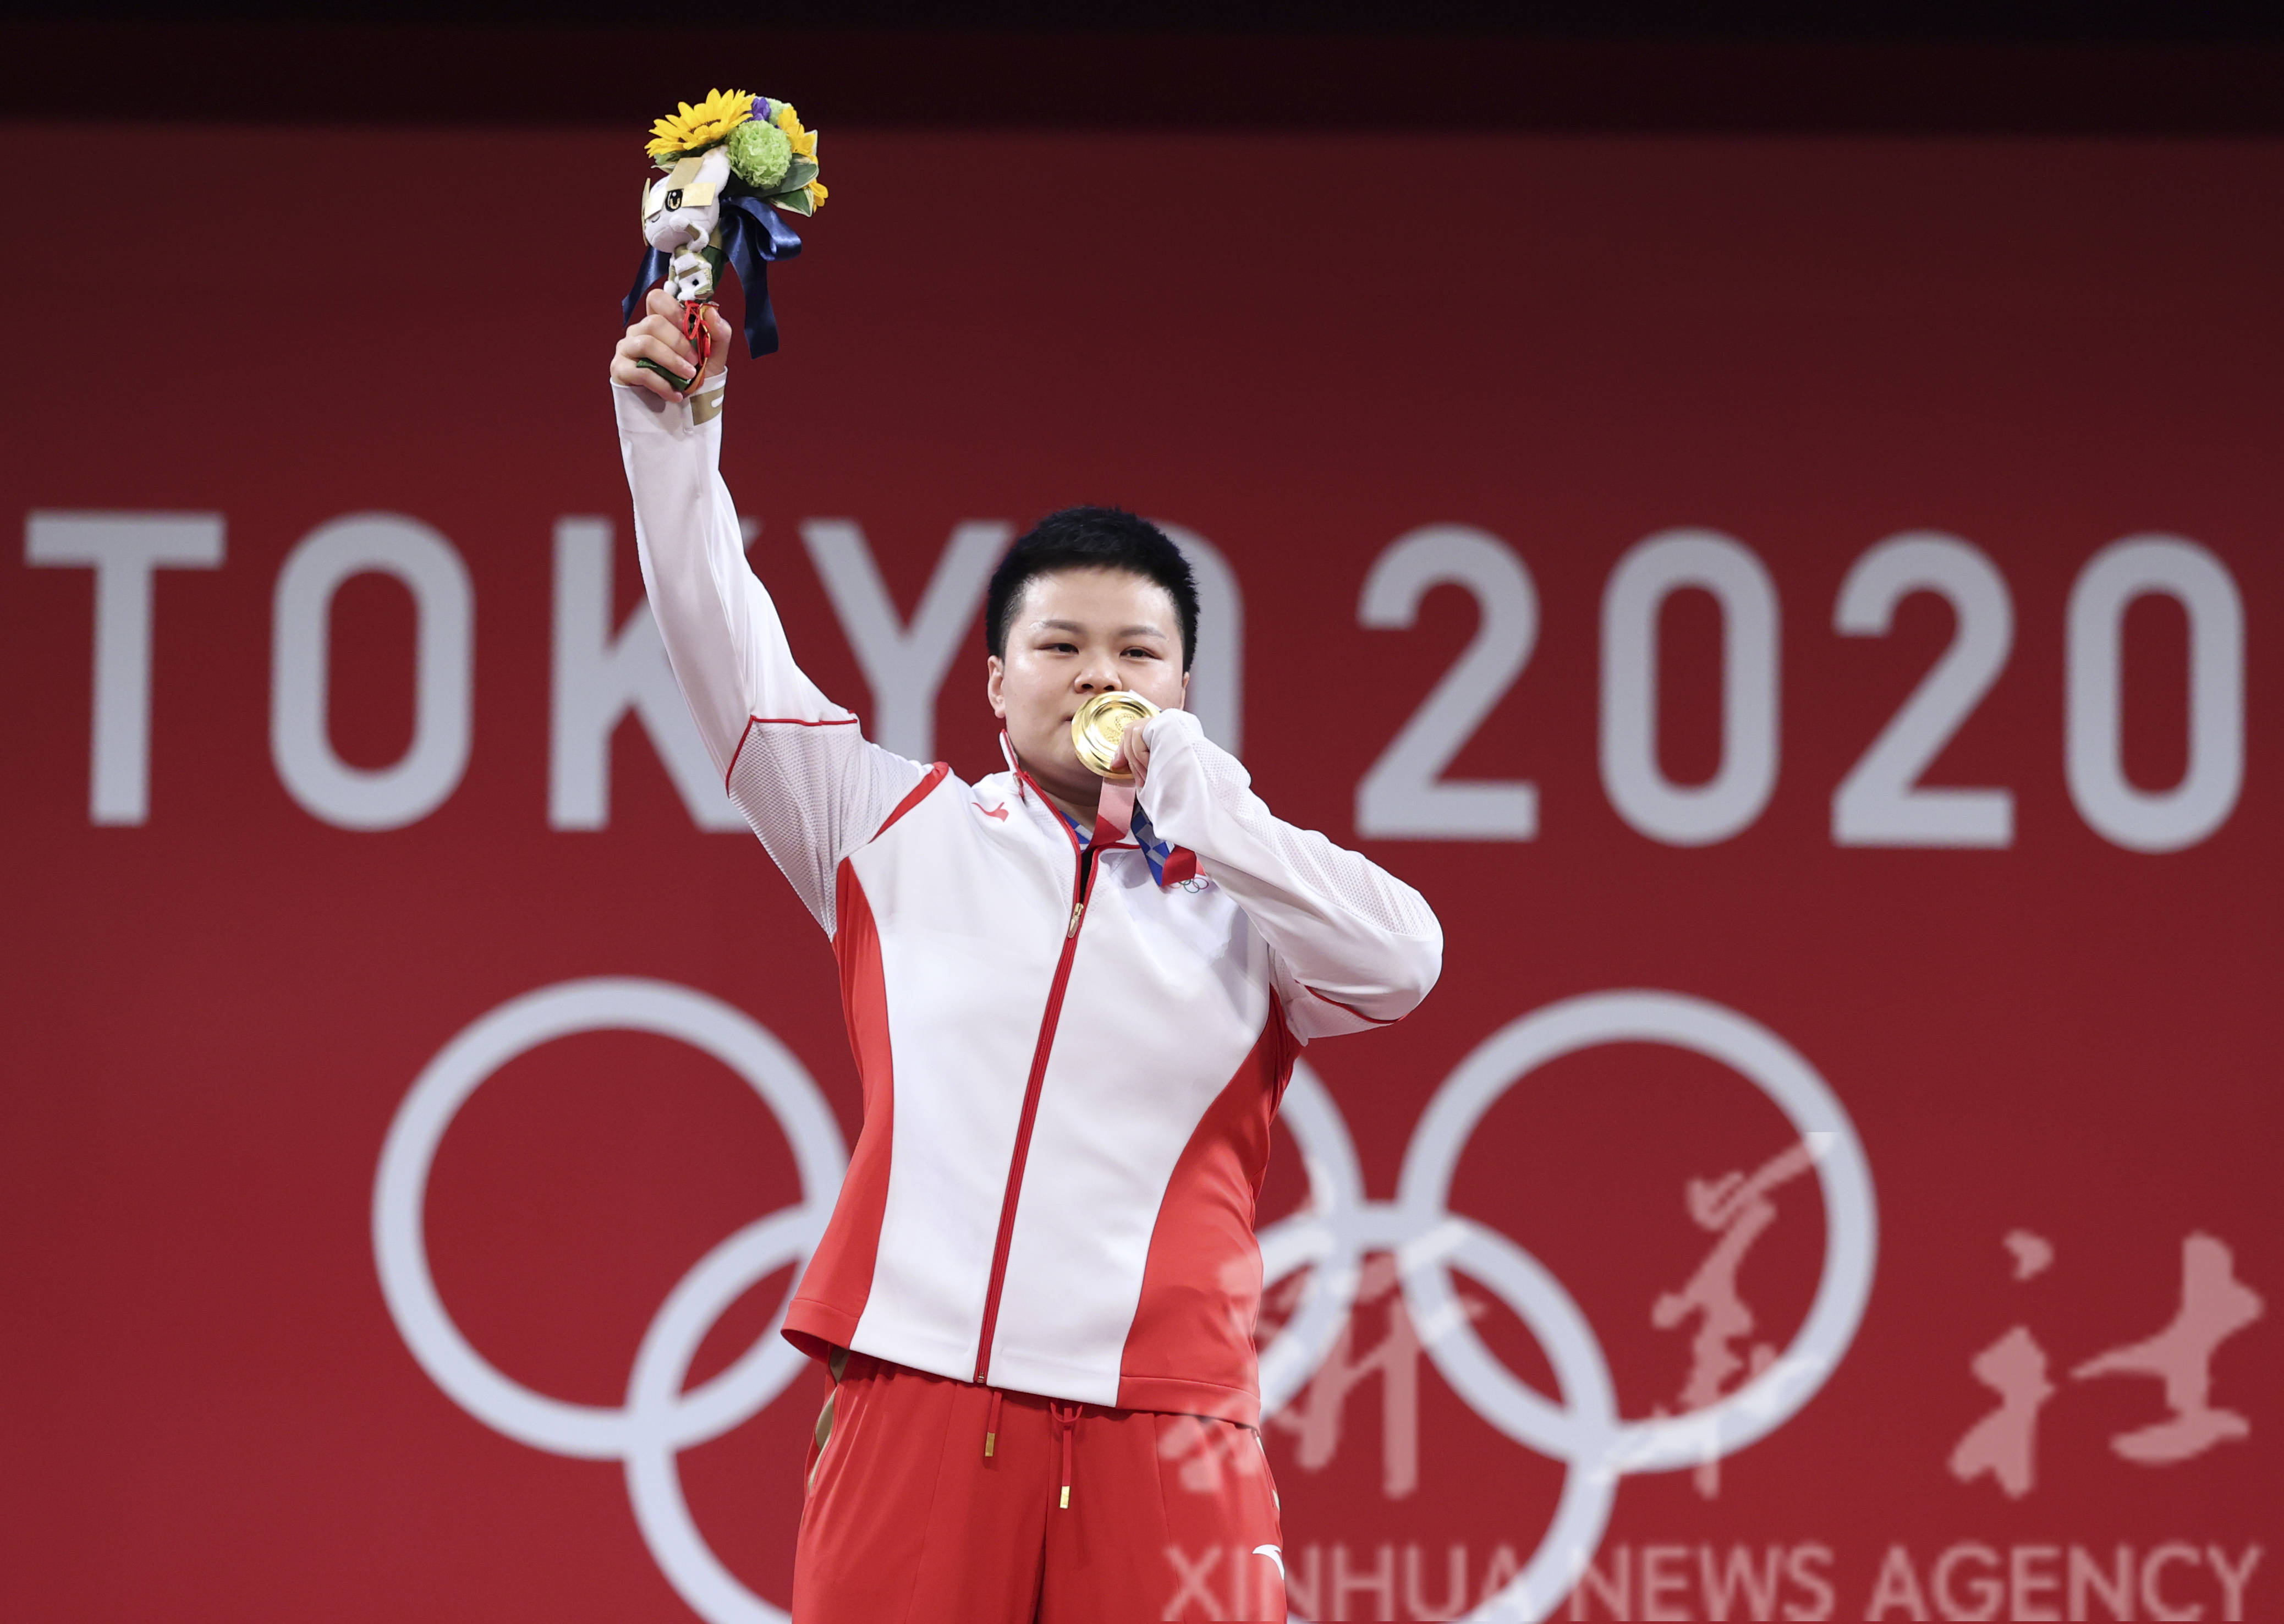 在东京奥运会举重项目女子87公斤级比赛中,中国选手汪周雨夺得冠军